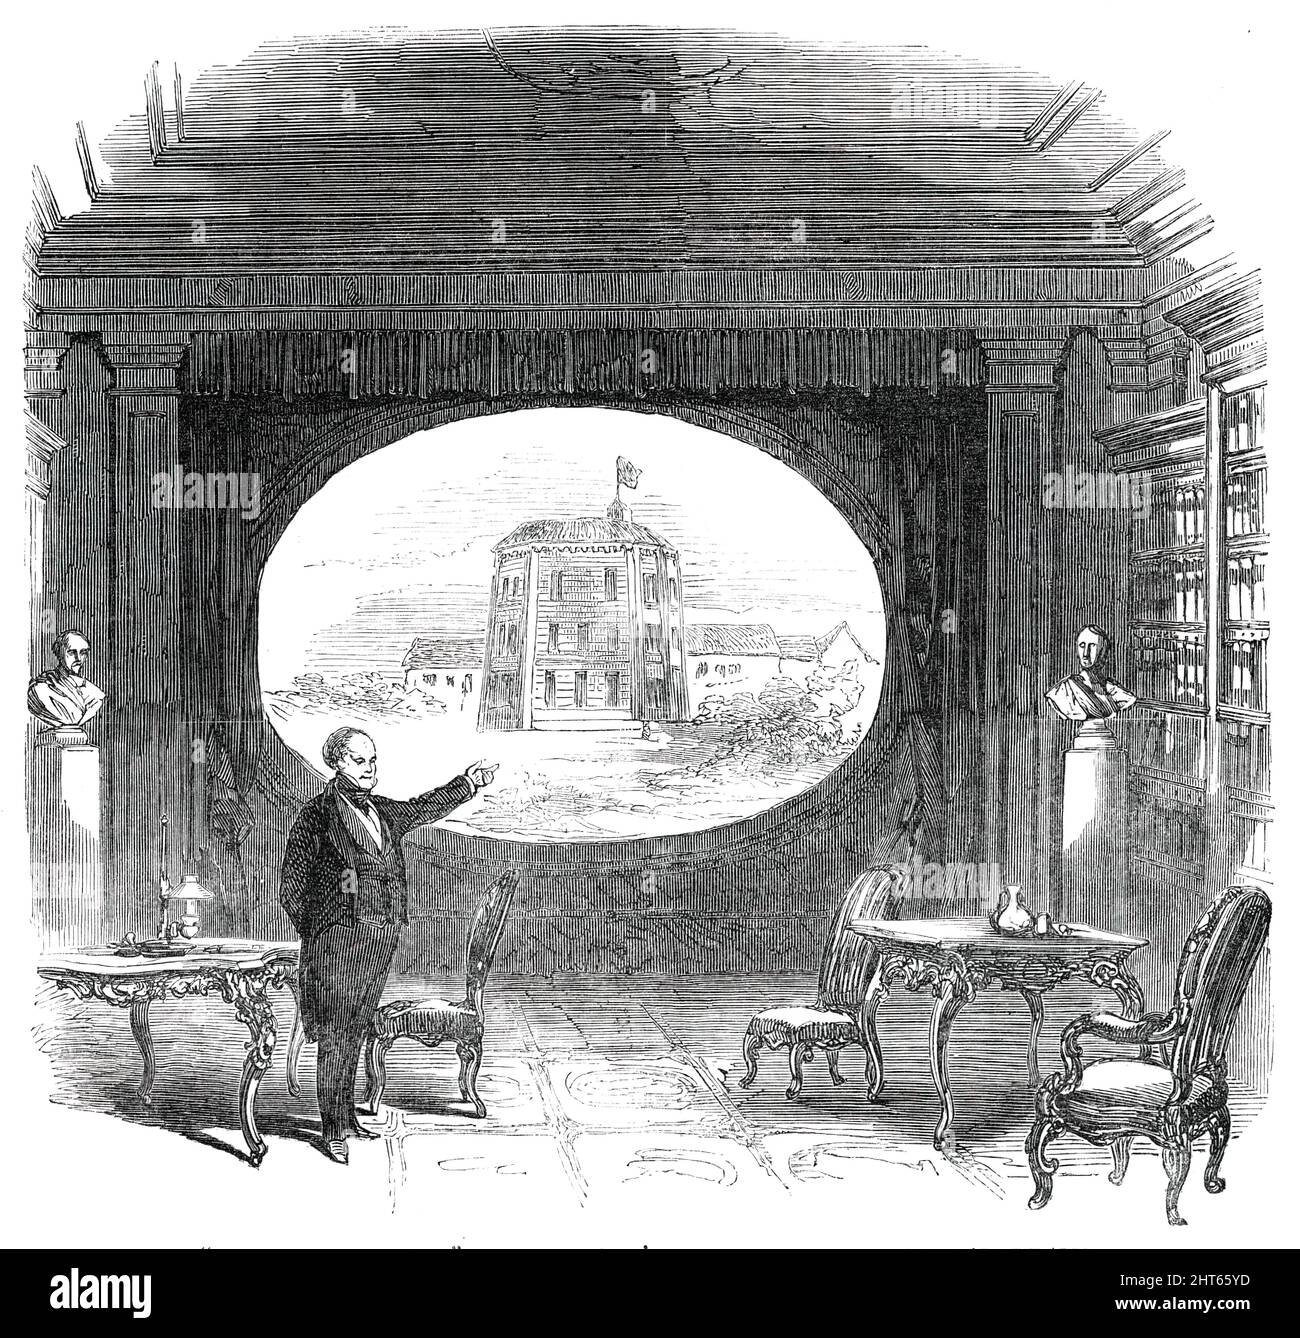 Sr. Bunn en el escenario, en el teatro de St. James - Escena el teatro Blackfriars, [Londres], 1850. '...un monólogo...en las cosas teatrales, en el gran Shakspeare...la discusión fue aliviada por los chalecos viejos y nuevos, por anécdotas ditto, y por recitaciones que mostraron un talento histriónico considerable... Sr. Bunn pronunció su conferencia con mucha facilidad y tacto, aunque no sin señales de cansancio hacia la conclusión - un resultado que no debe ser preguntado, considerando que habló en conjunto durante más de tres horas. Al tratar el “genio y carrera de Shakspeare”, el Sr. Bunn il Foto de stock